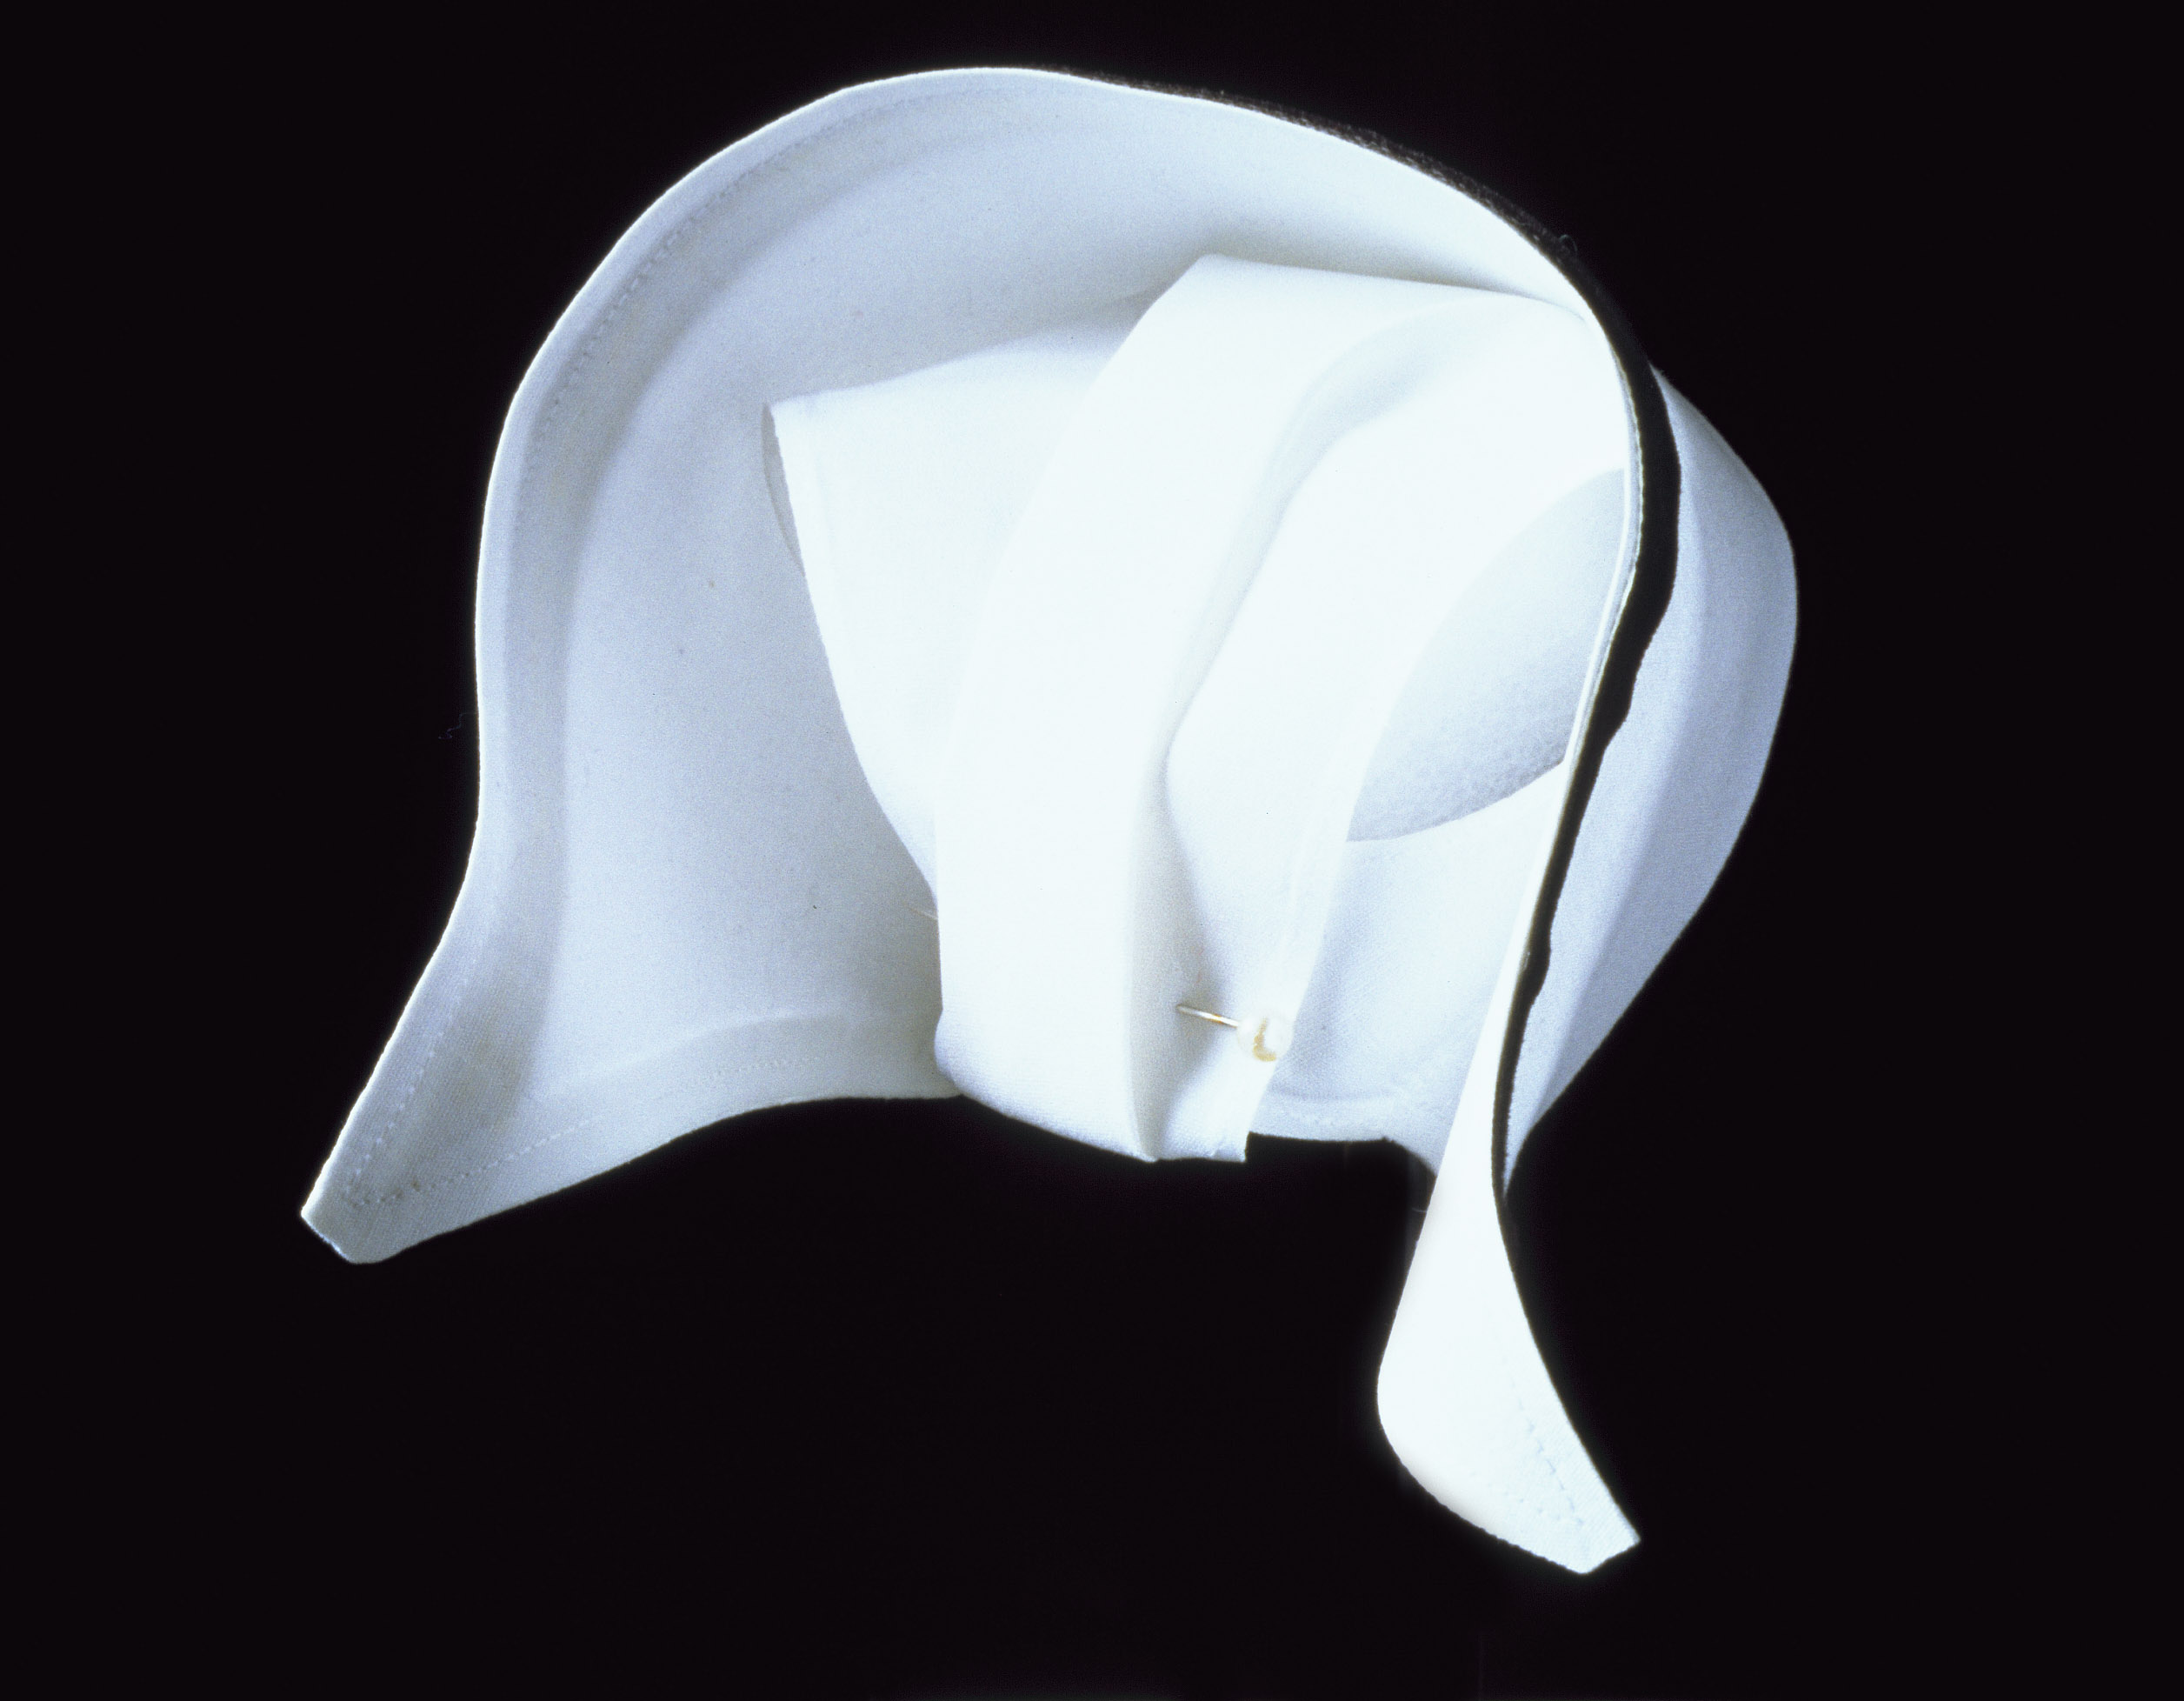 flat cap symbolism